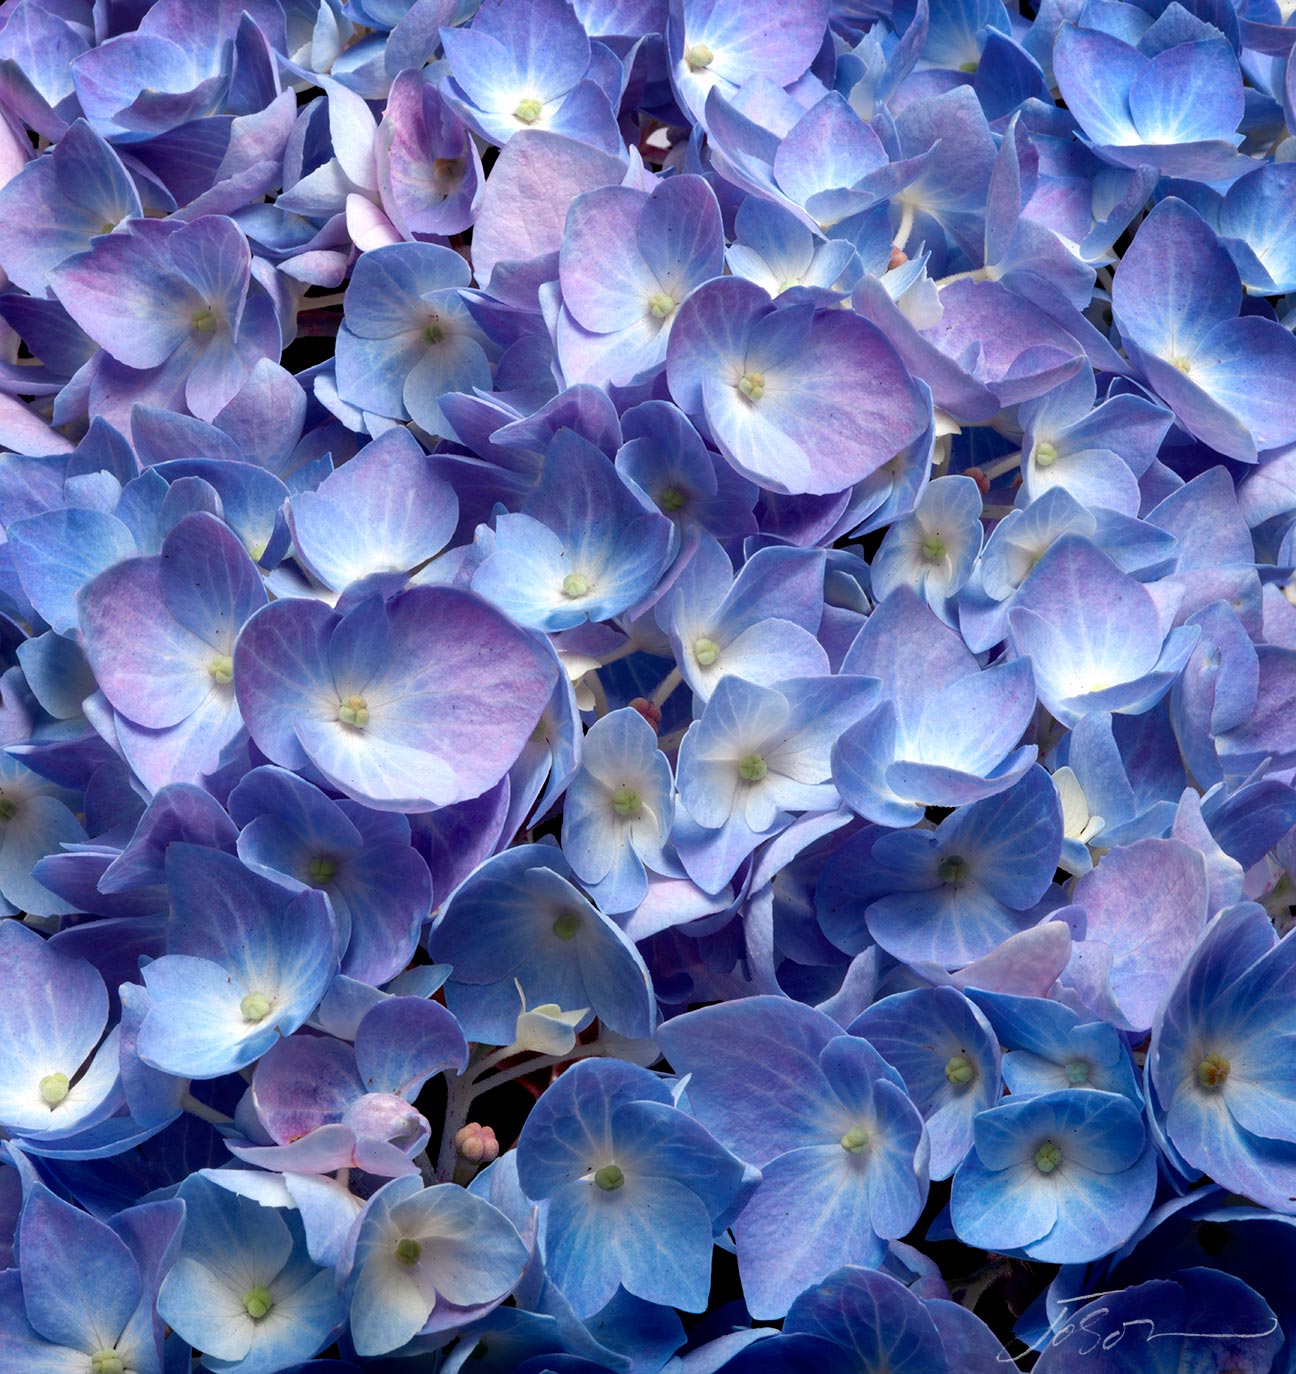 Blue Hydrangea # 1 by joSon